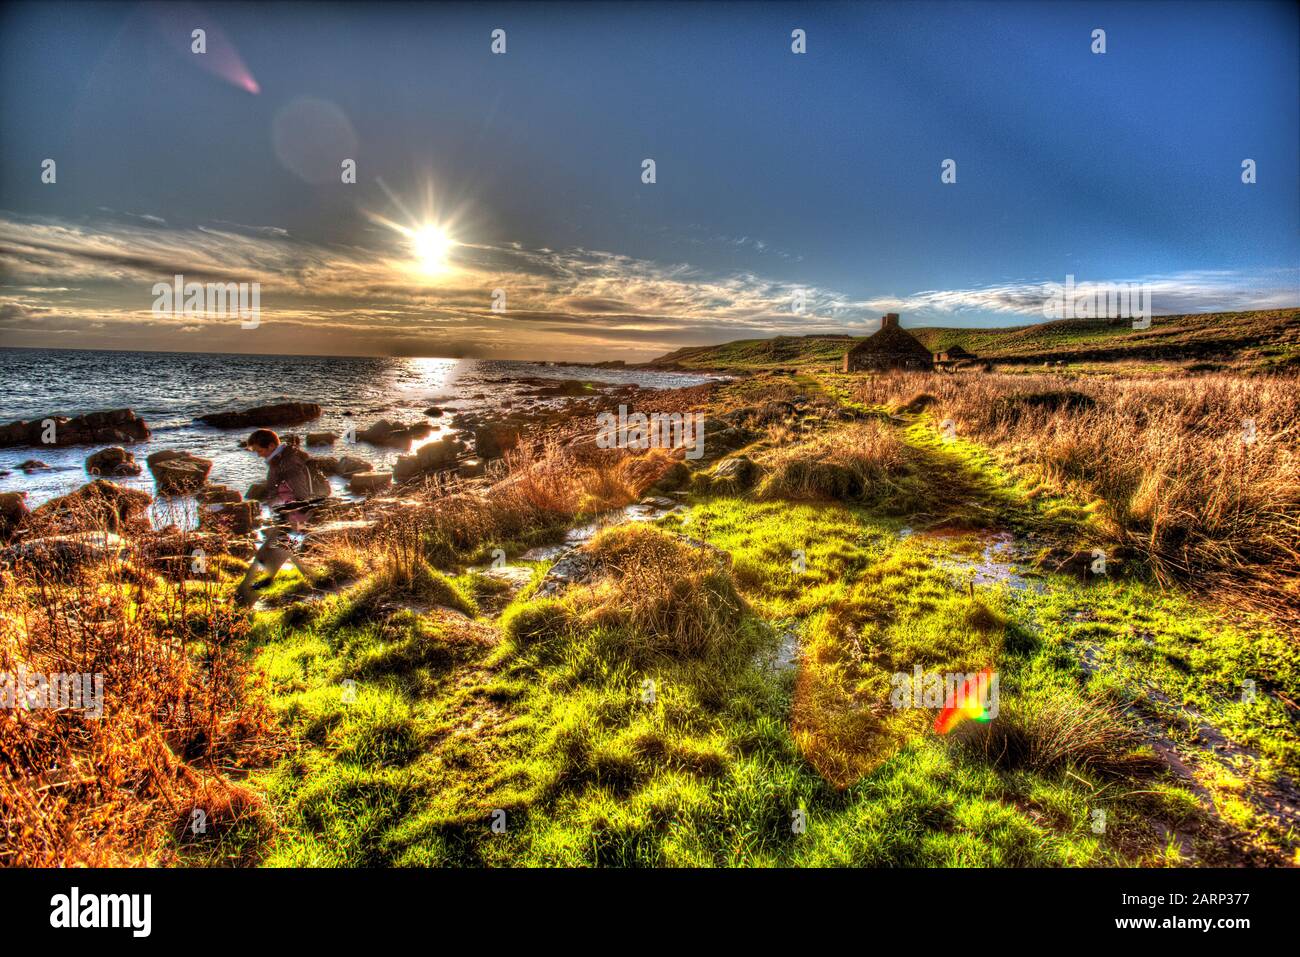 Fife Coastal Path, Scozia. Vista dal profilo artistico del Fife Coastal Path, tra i villaggi di Anstruther e Crail. Foto Stock